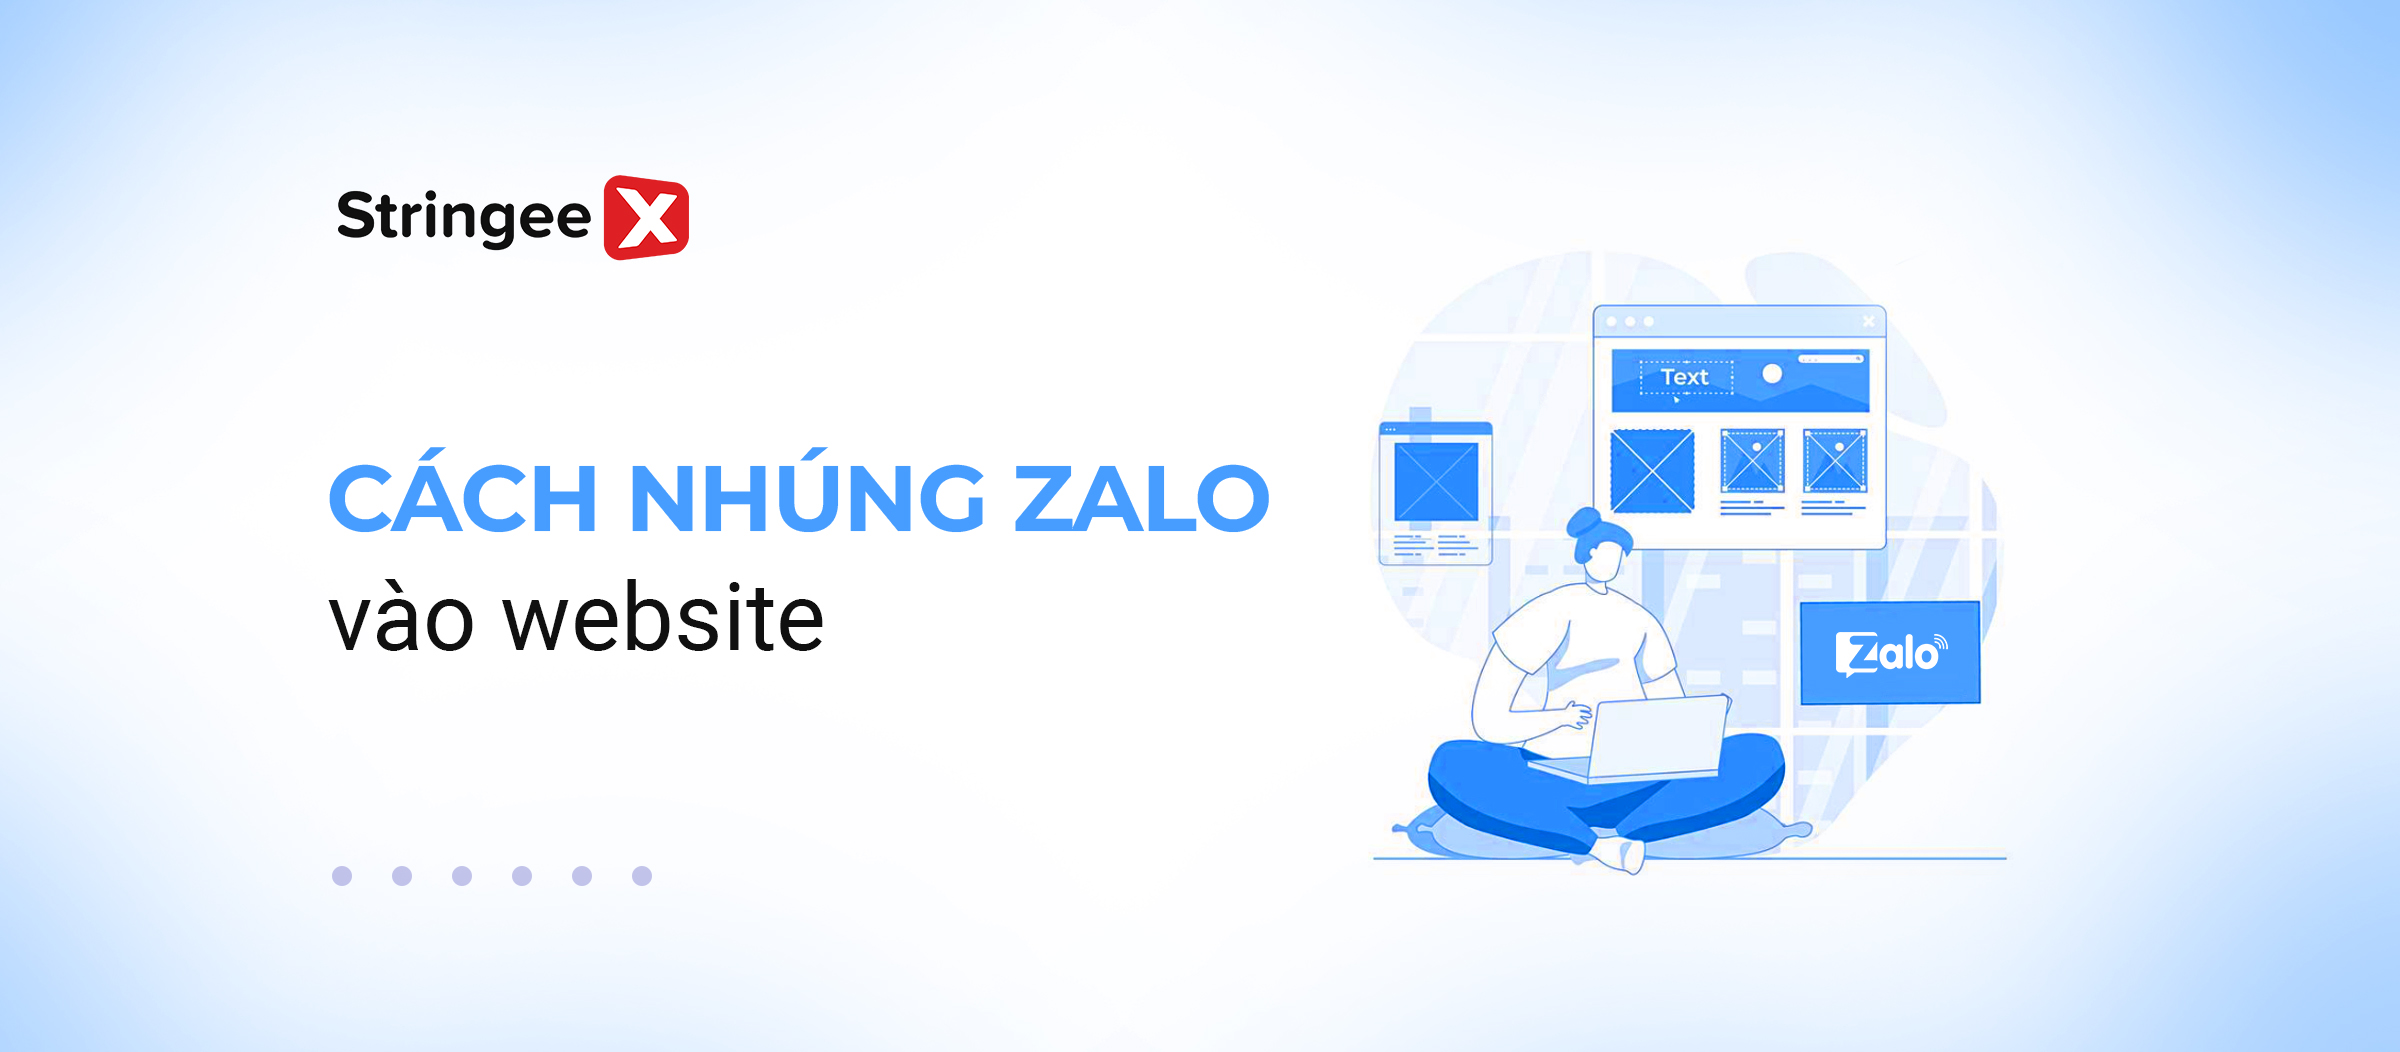 Hướng dẫn cách nhúng Zalo vào Website đơn giản và hiệu quả